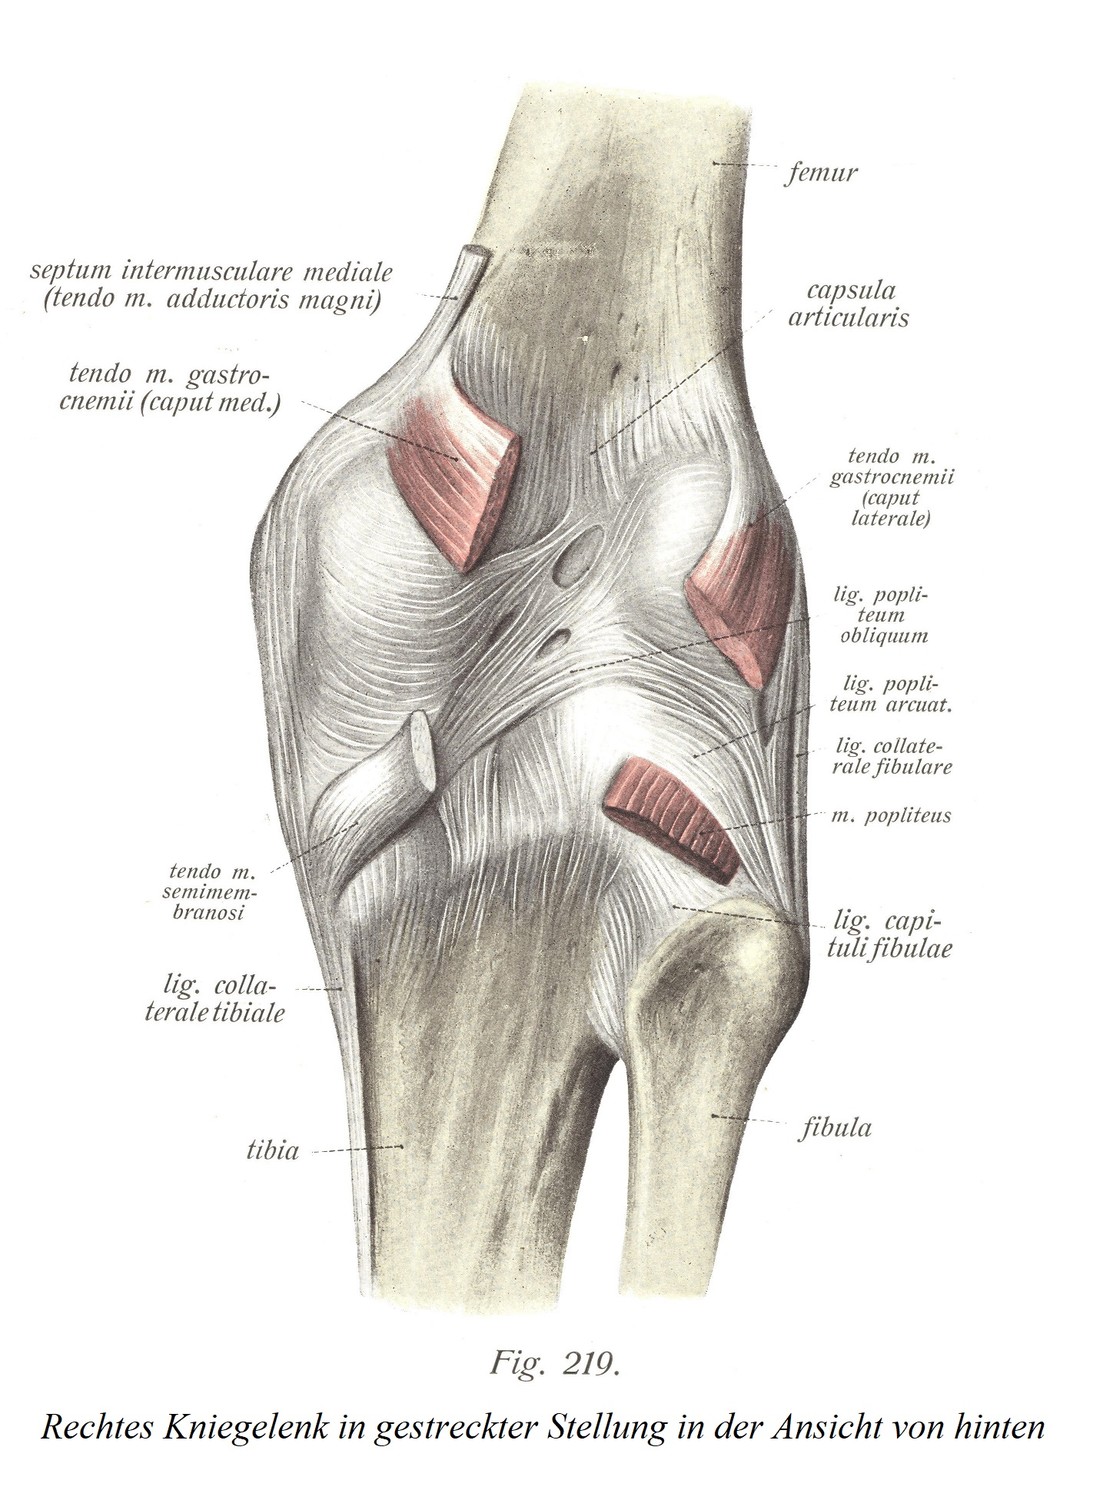 Правый коленный сустав в вытянутом положении, вид сзади